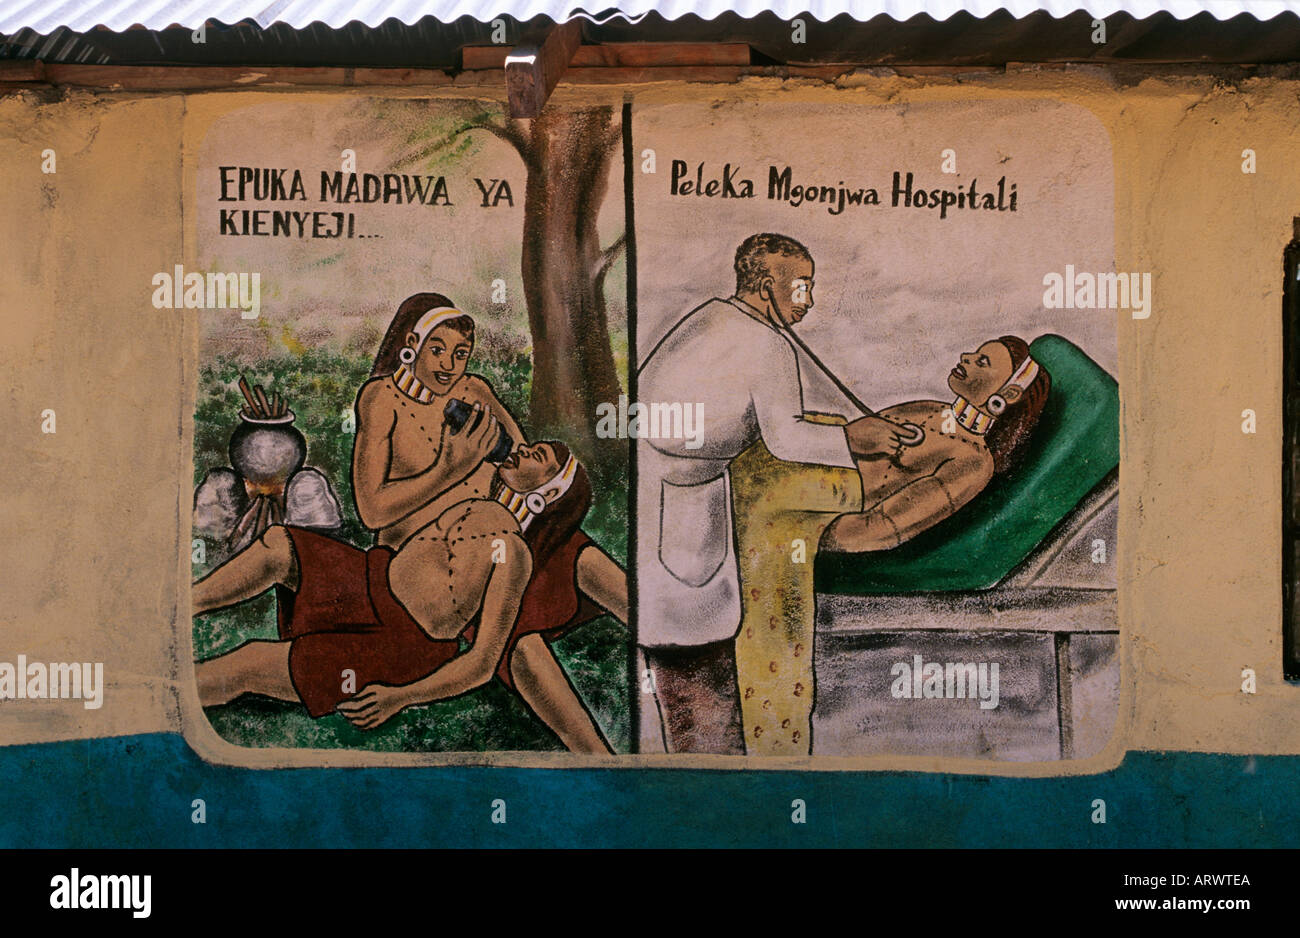 Folk art sur clinc murs dans les terres samburu du Kenya, le message d'éviter les potions et les rendez-vous pour l'attention médicale professionnelle Banque D'Images